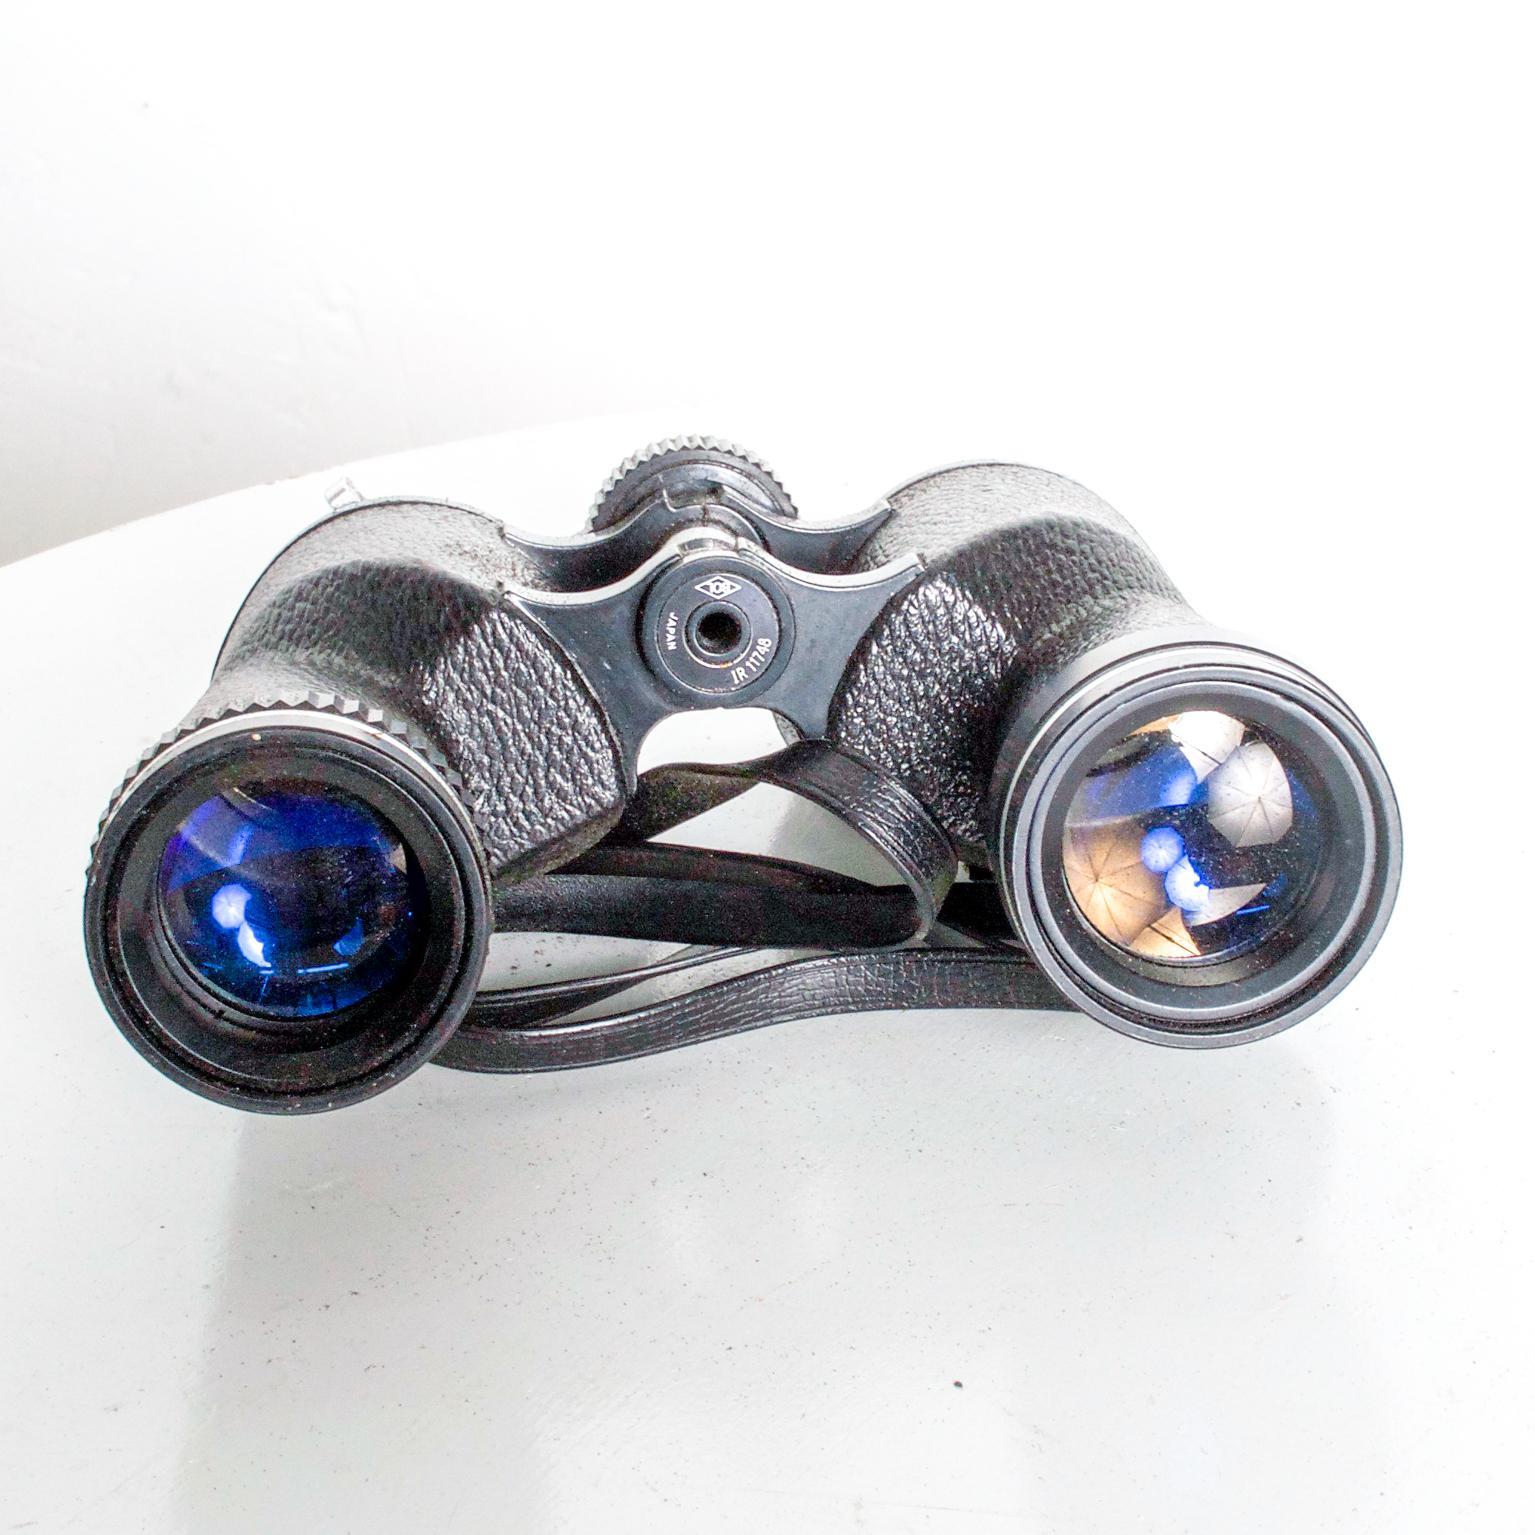 20th Century Vintage Bushnell Binoculars with Original Case